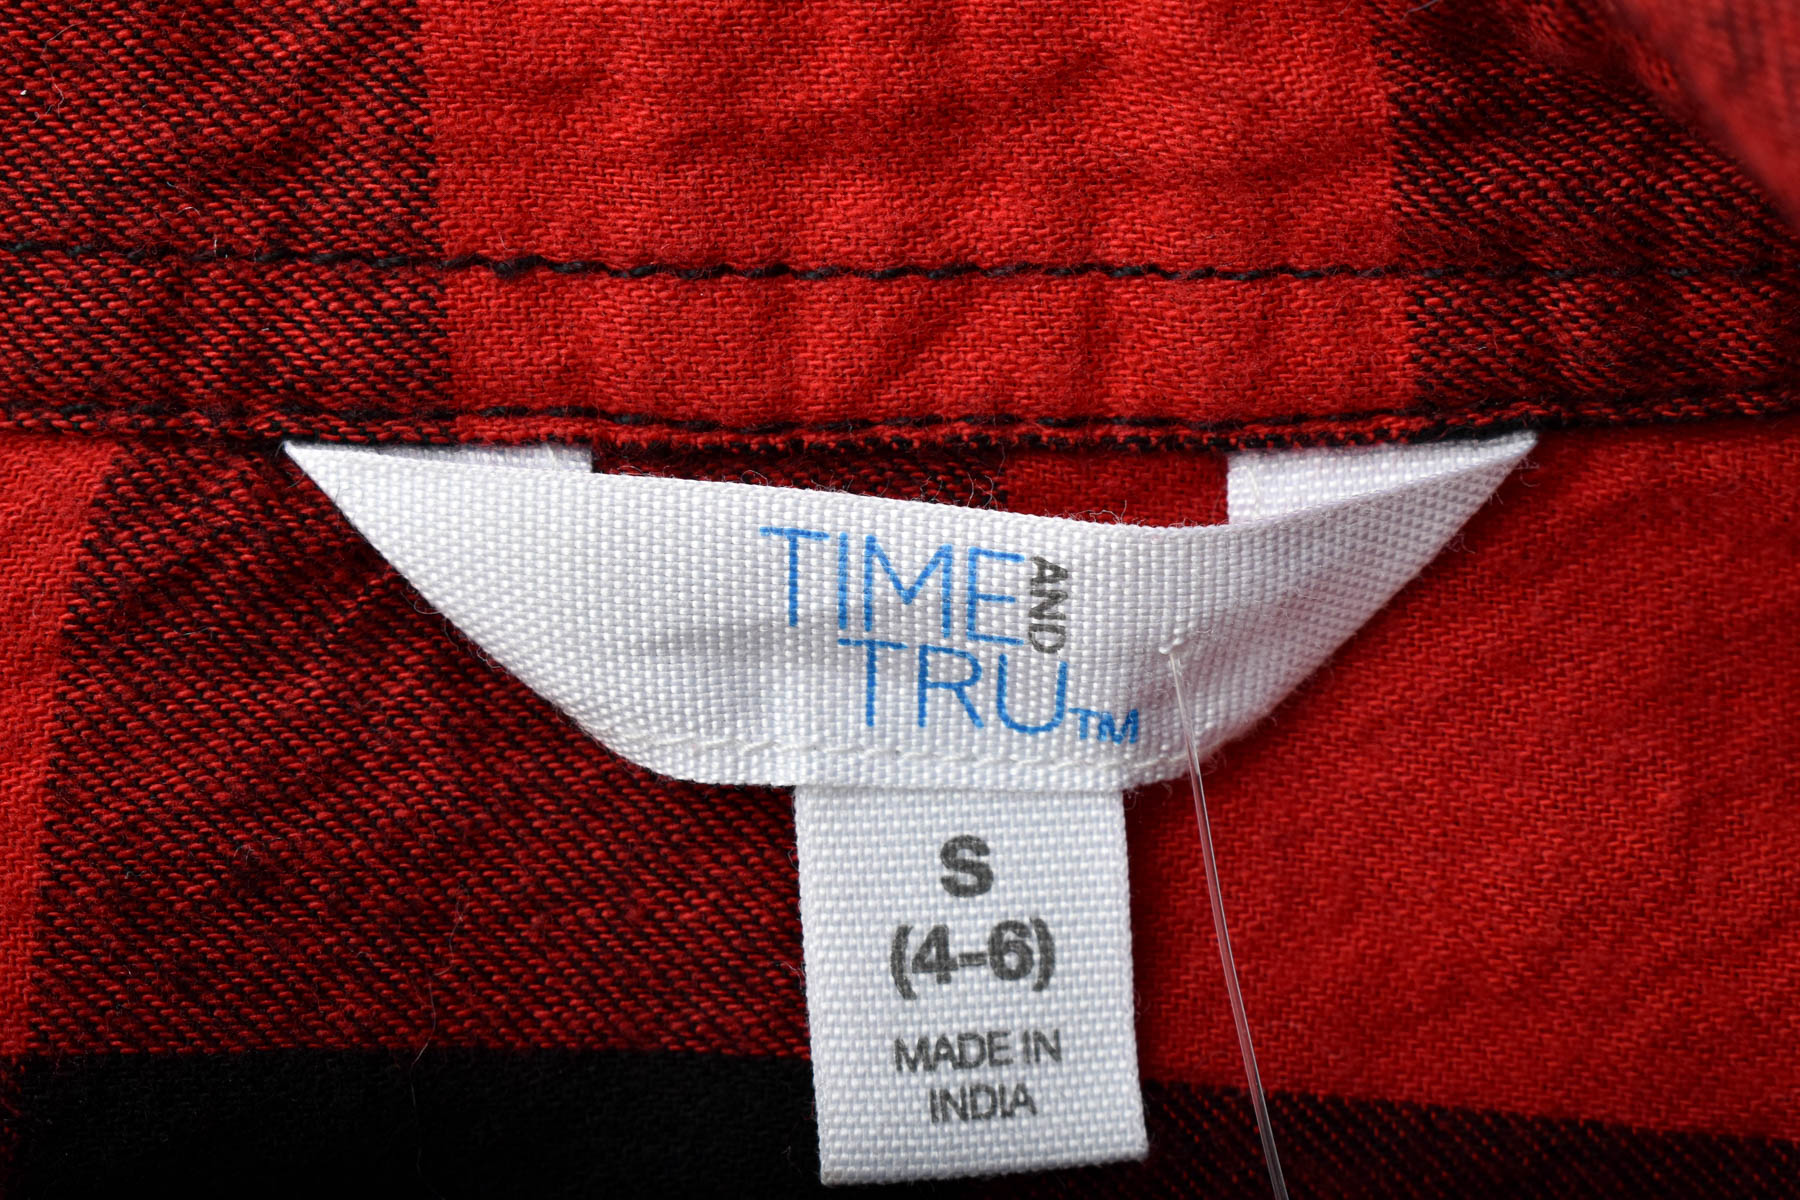 Women's shirt - TIME and TRU - 2